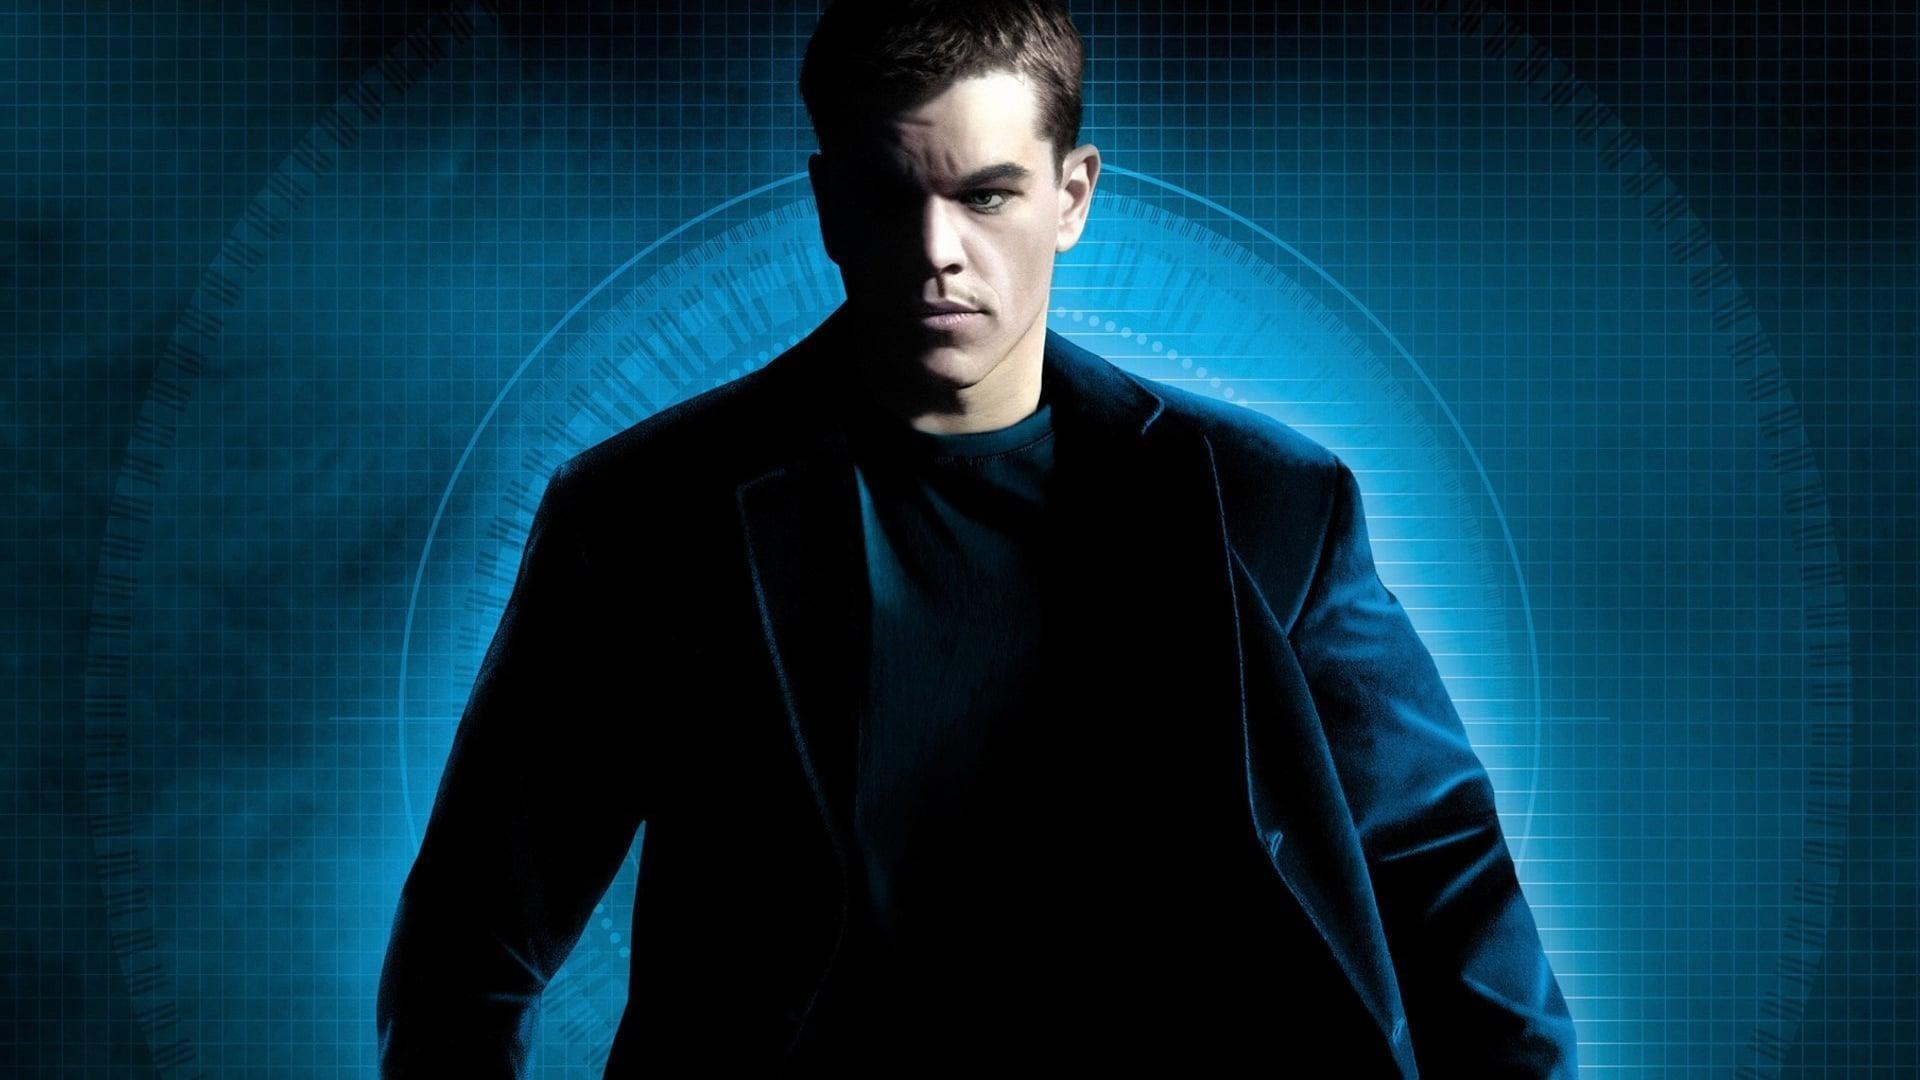 دانلود فیلم The Bourne Supremacy 2004